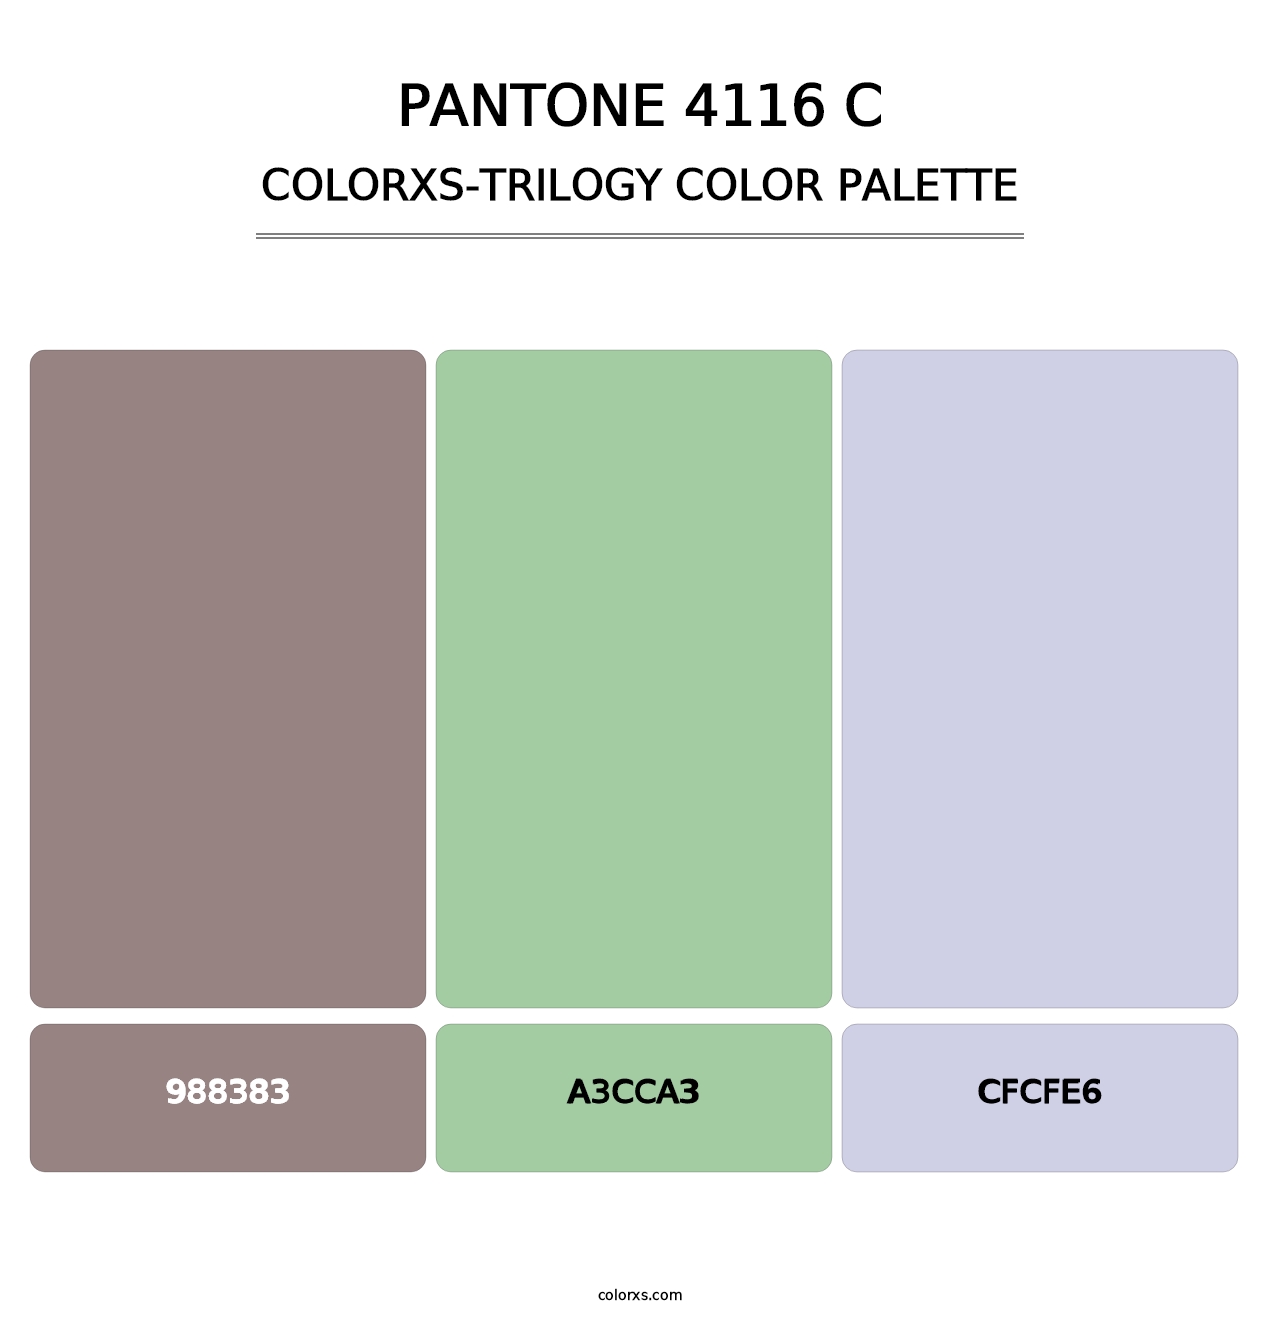 PANTONE 4116 C - Colorxs Trilogy Palette